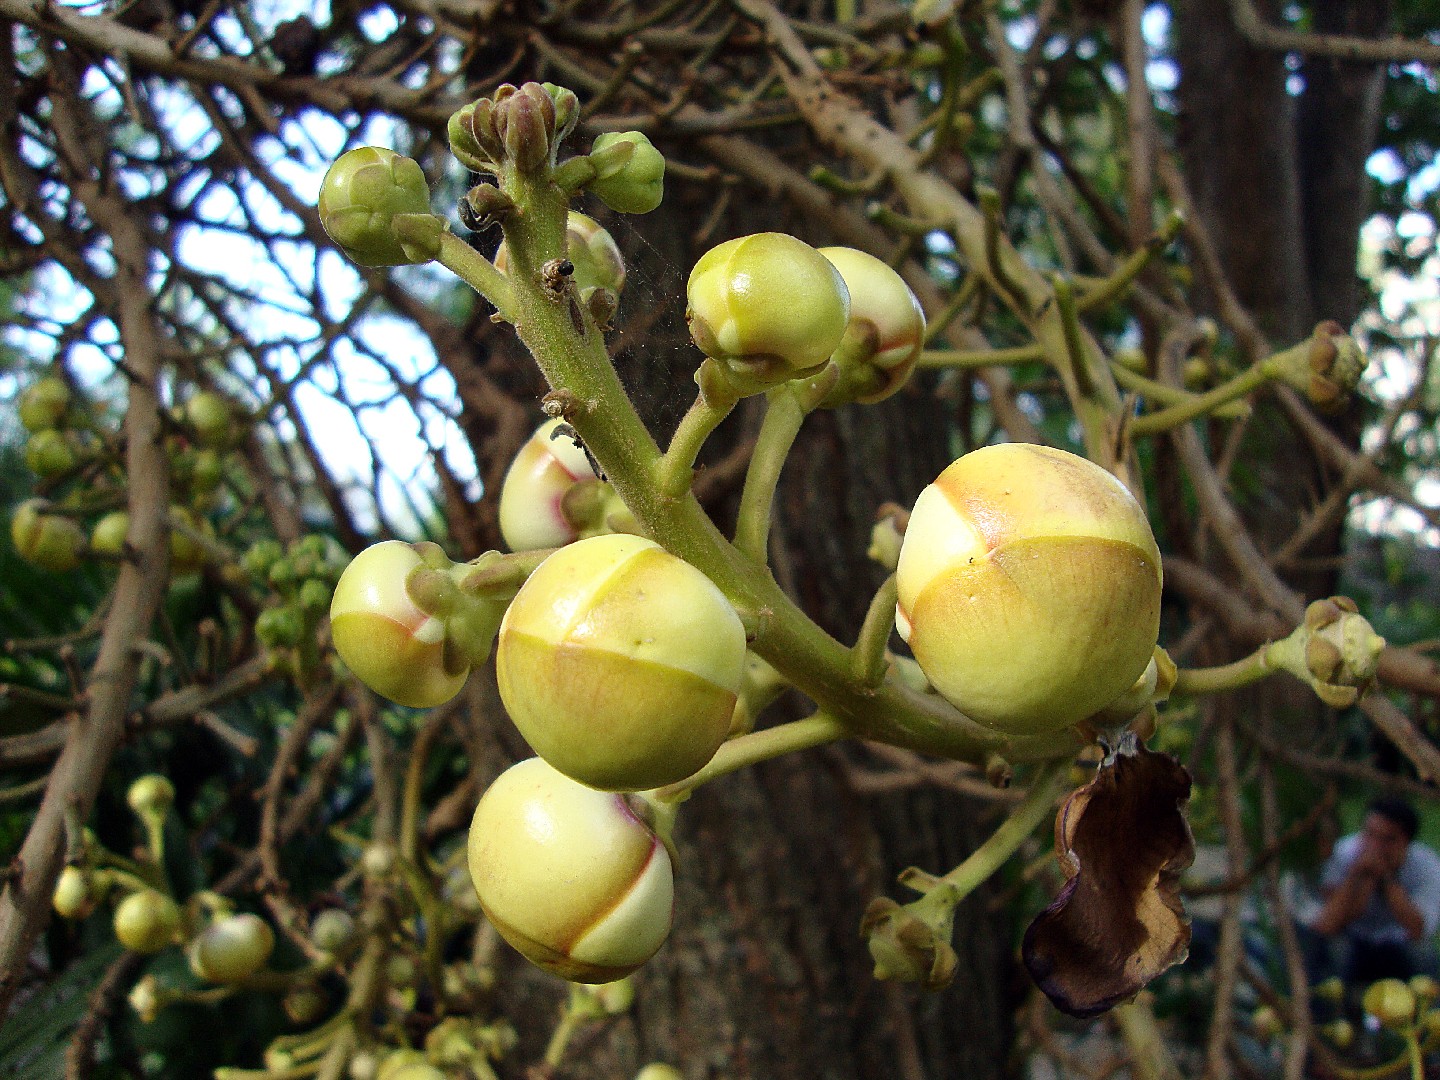 Cultiva arboles frutales de clima frio con éxito: guía experta